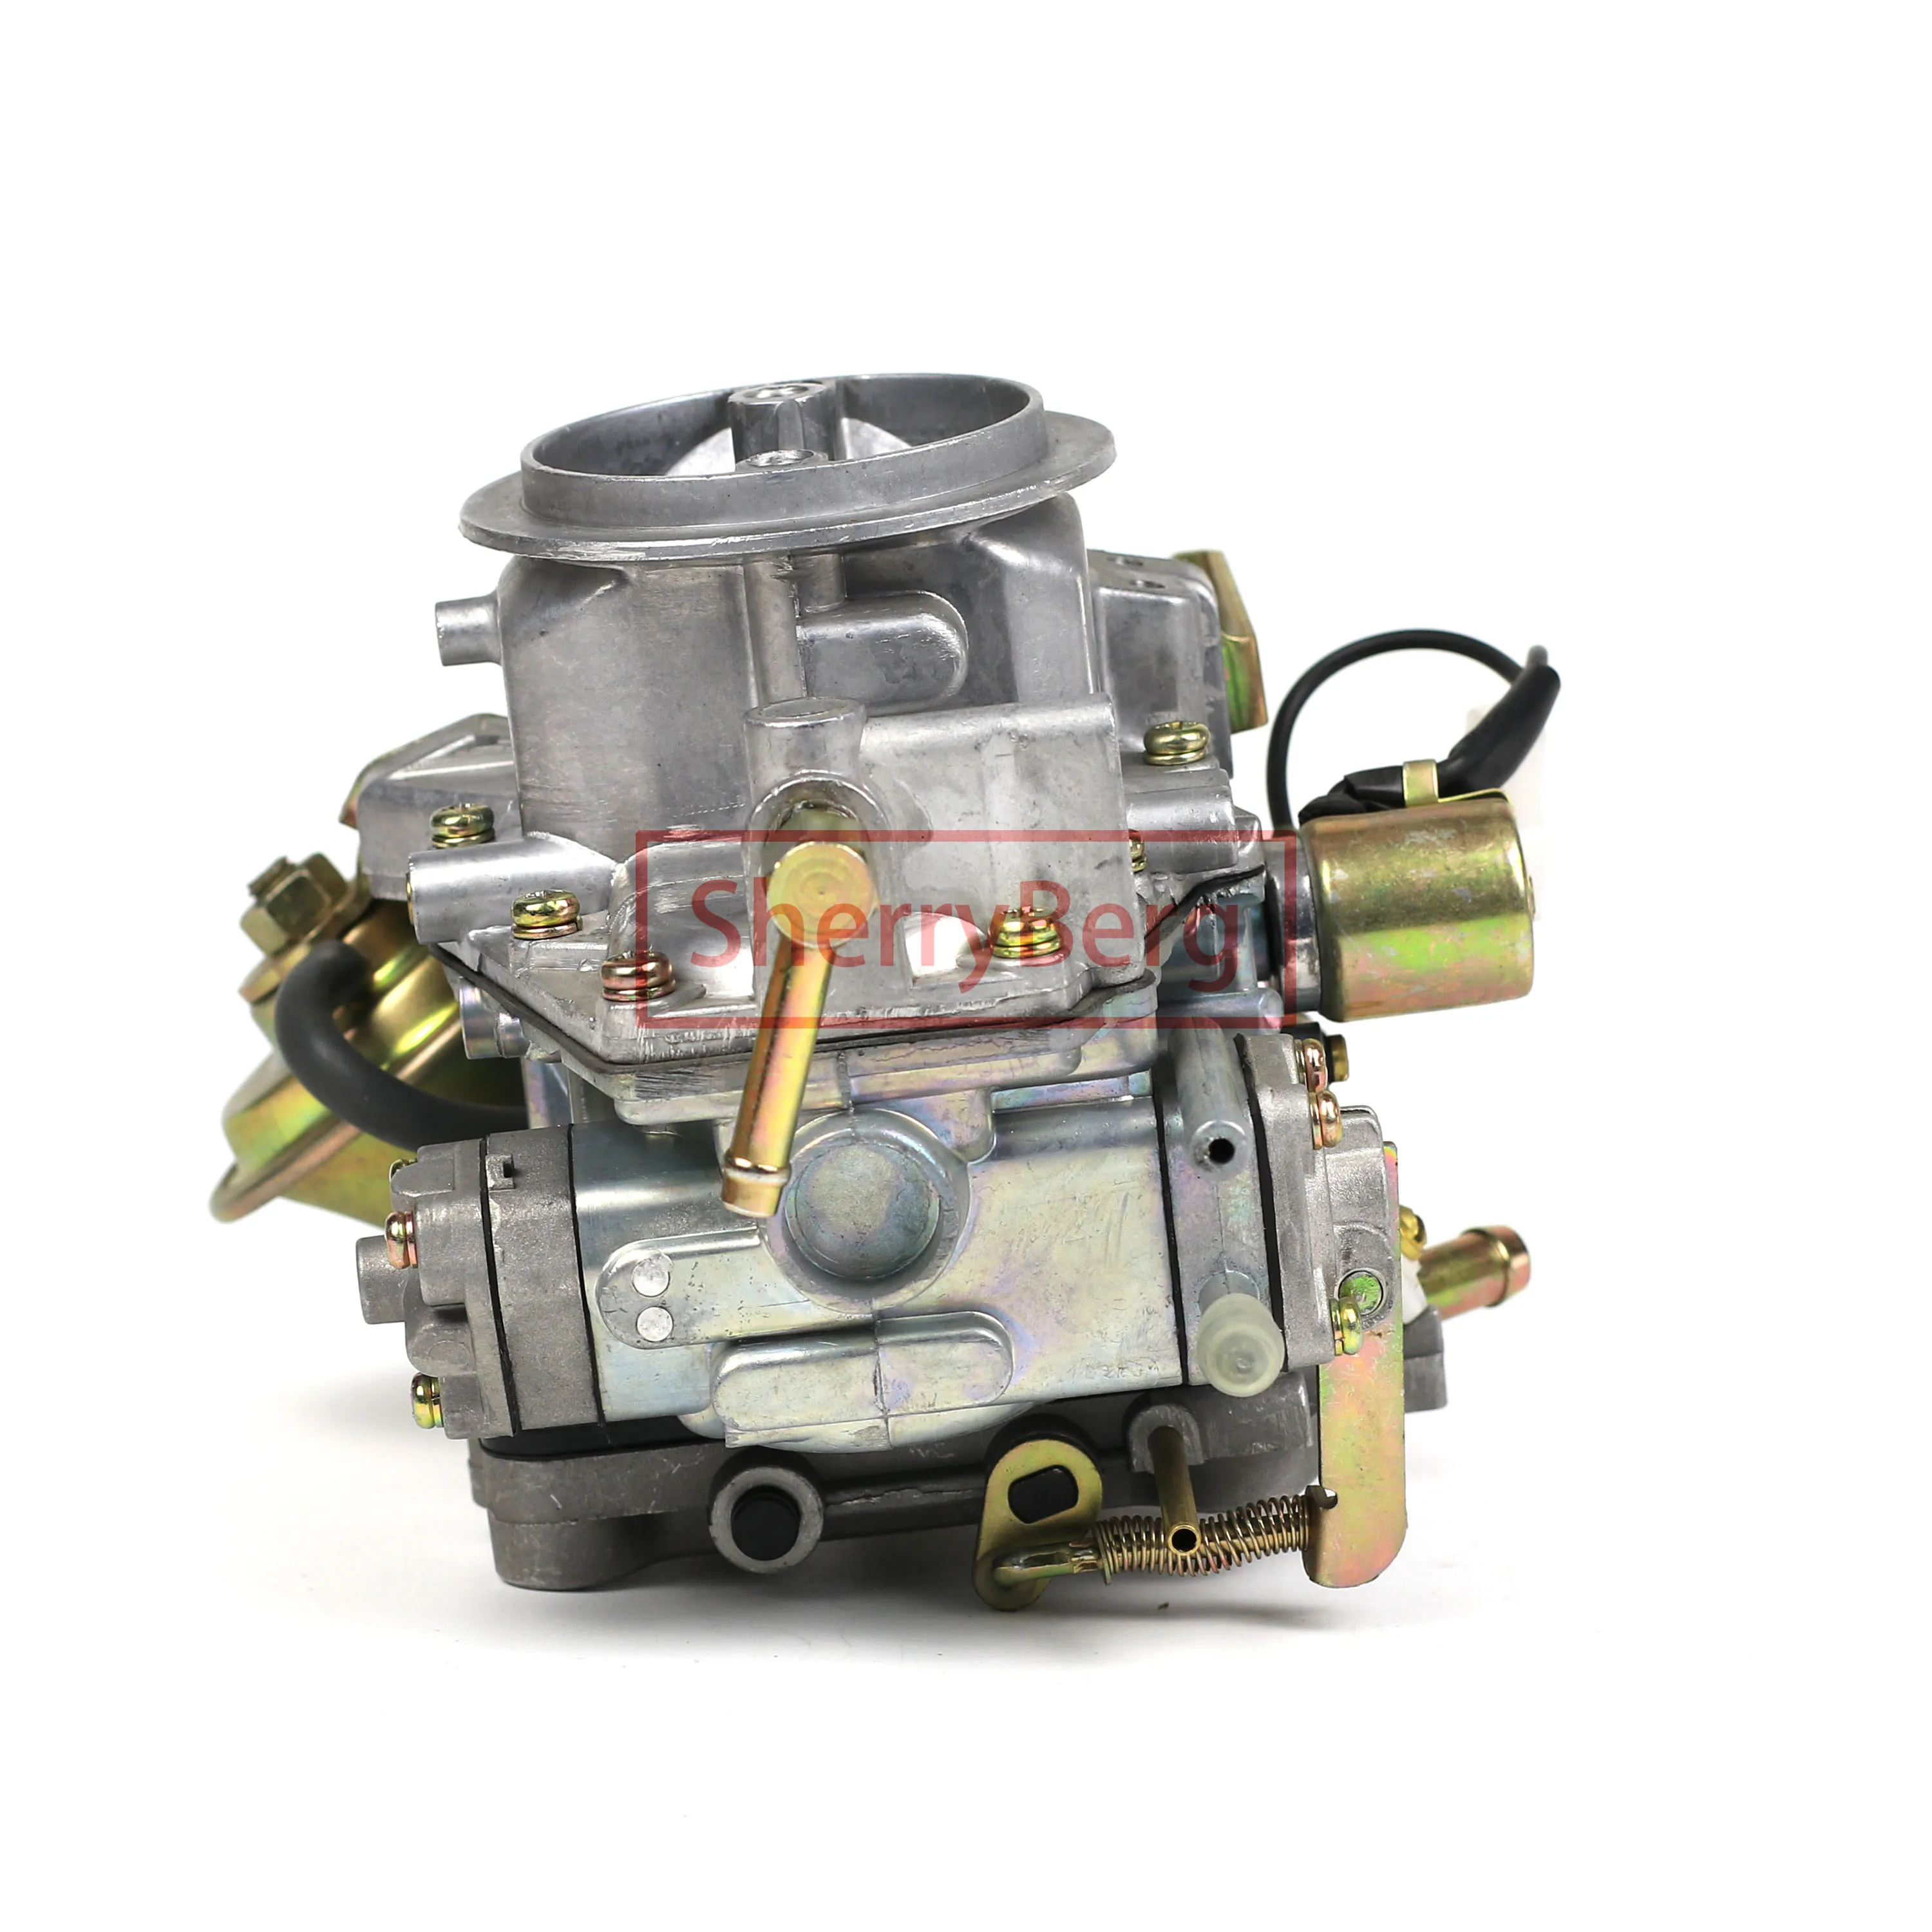 本日の目玉 IRIS SELECTIONRareelectrical スターター MOTOR COMPATIBLE WITH CATERPILLAR  FORK LIFT 94-00 GP15 GP30 MITSUBISHI 4G63 4G64 ENGINE 並行輸入品